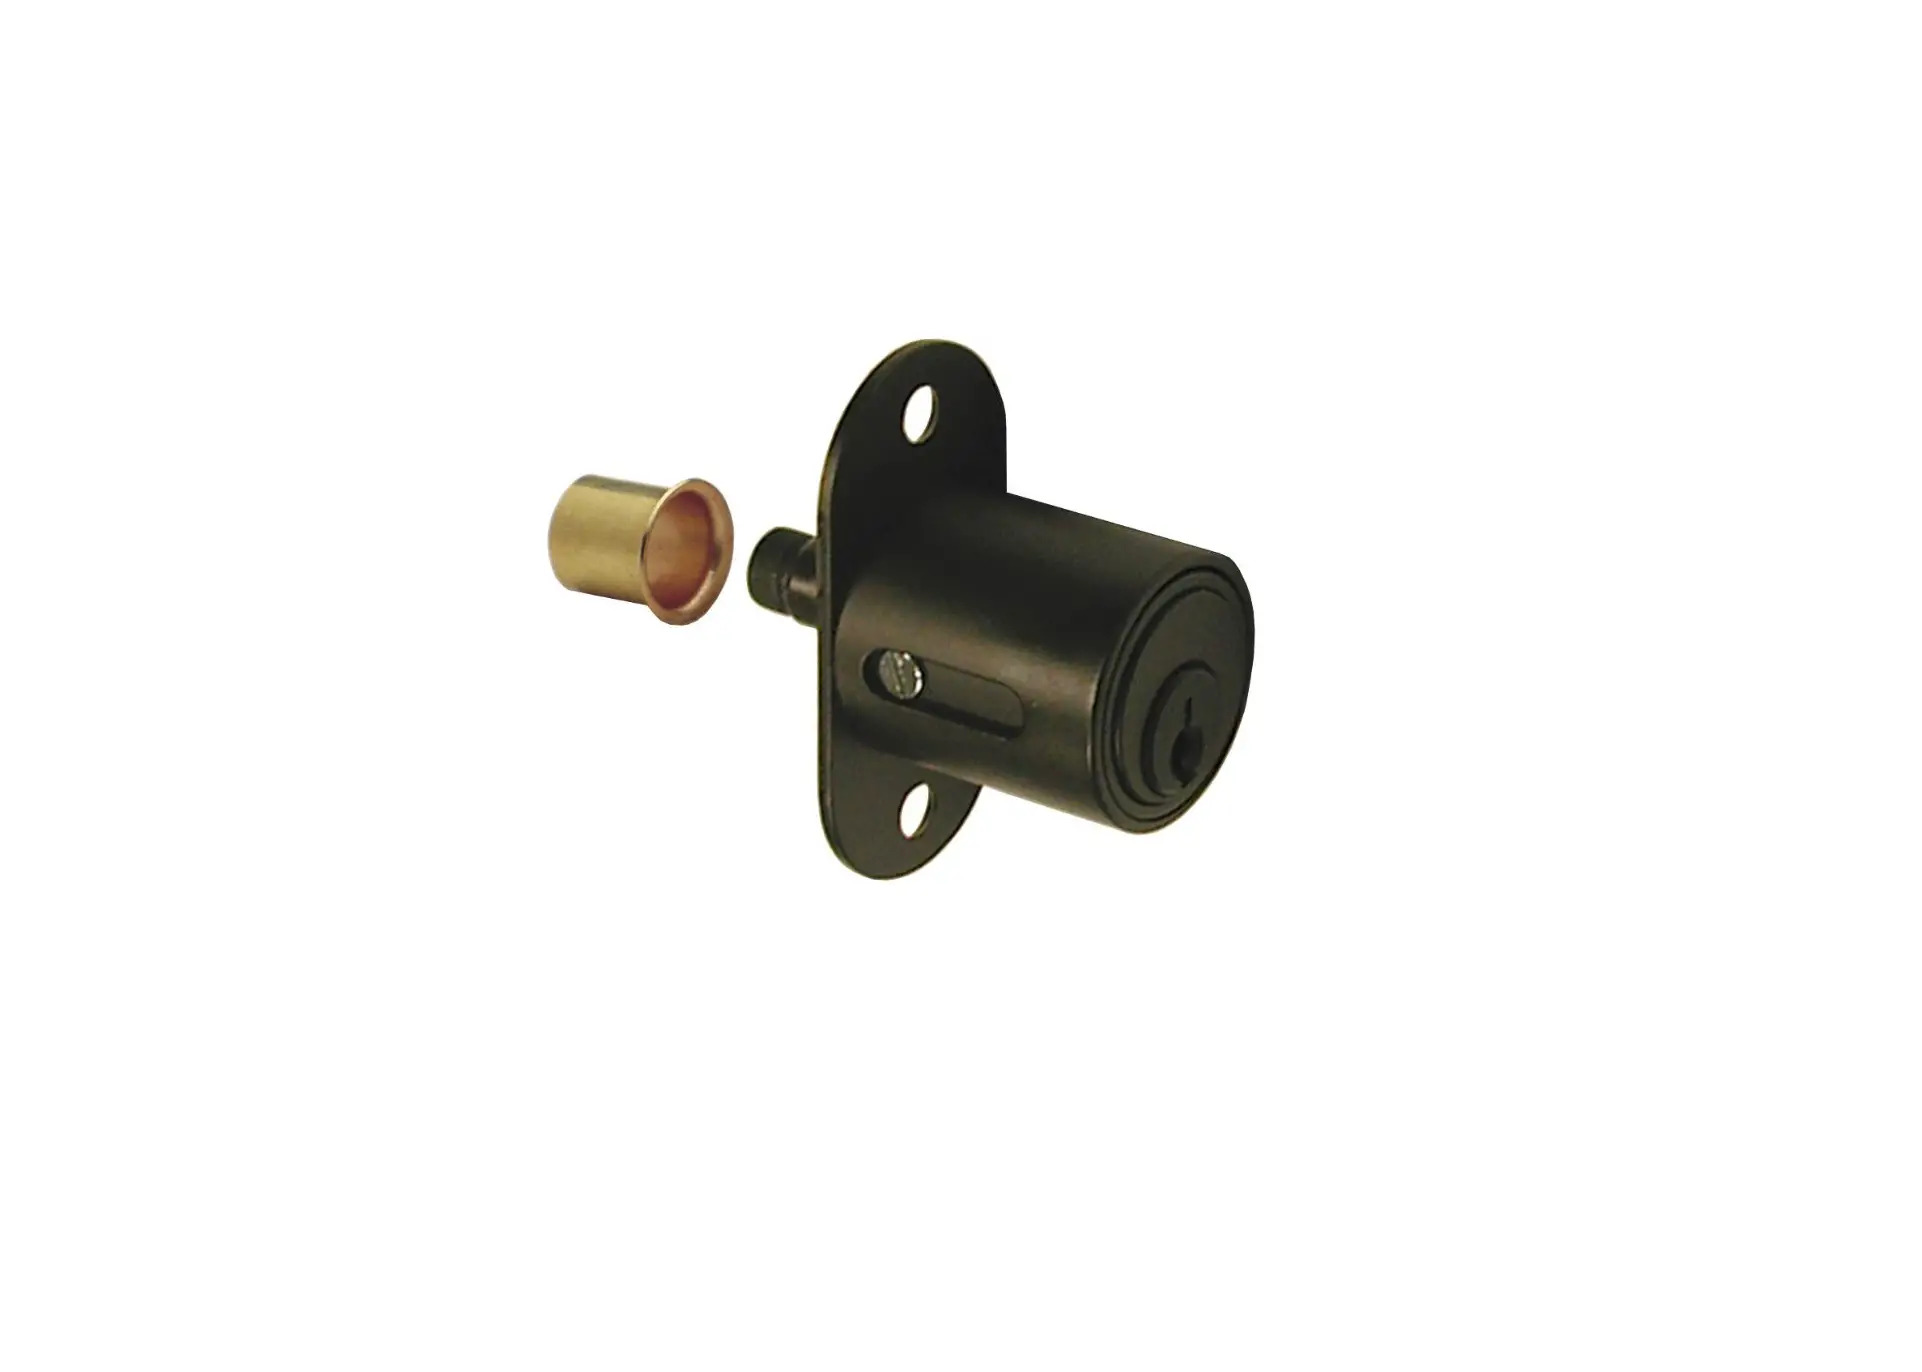 R Series 400SD Plunger Lock